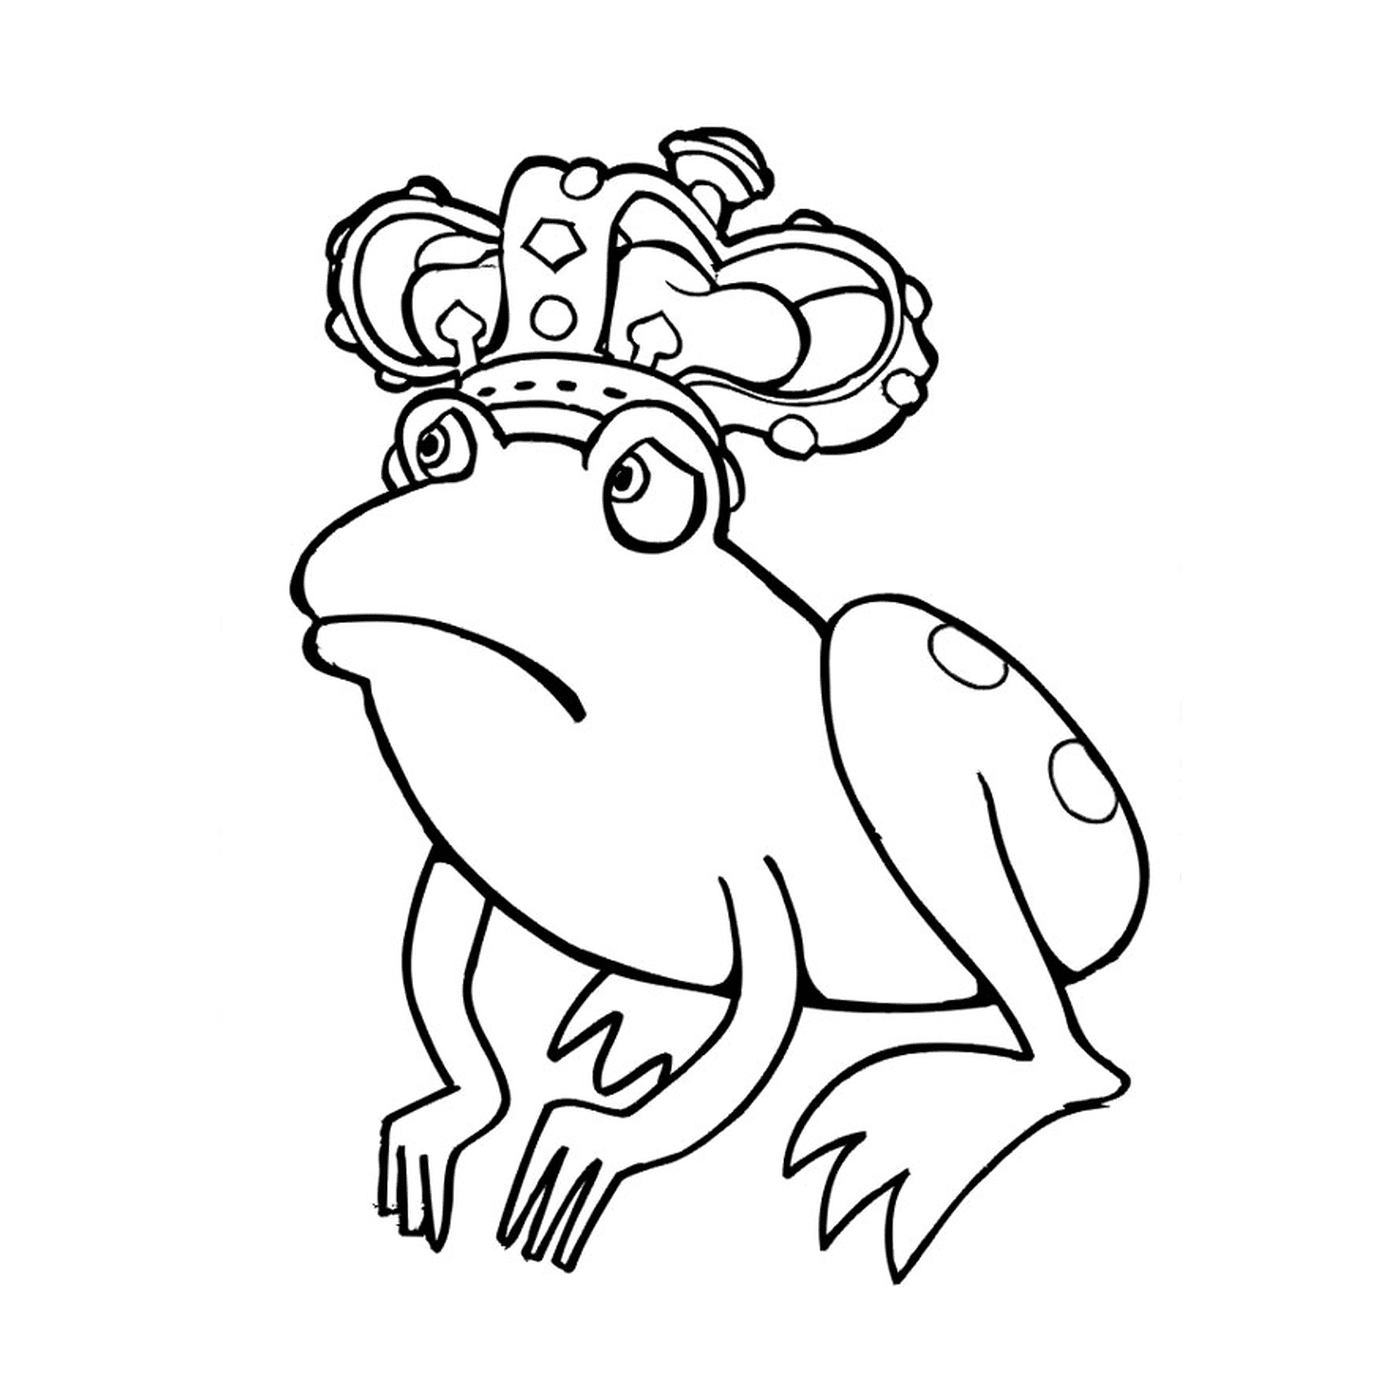  带着皇冠的青蛙 